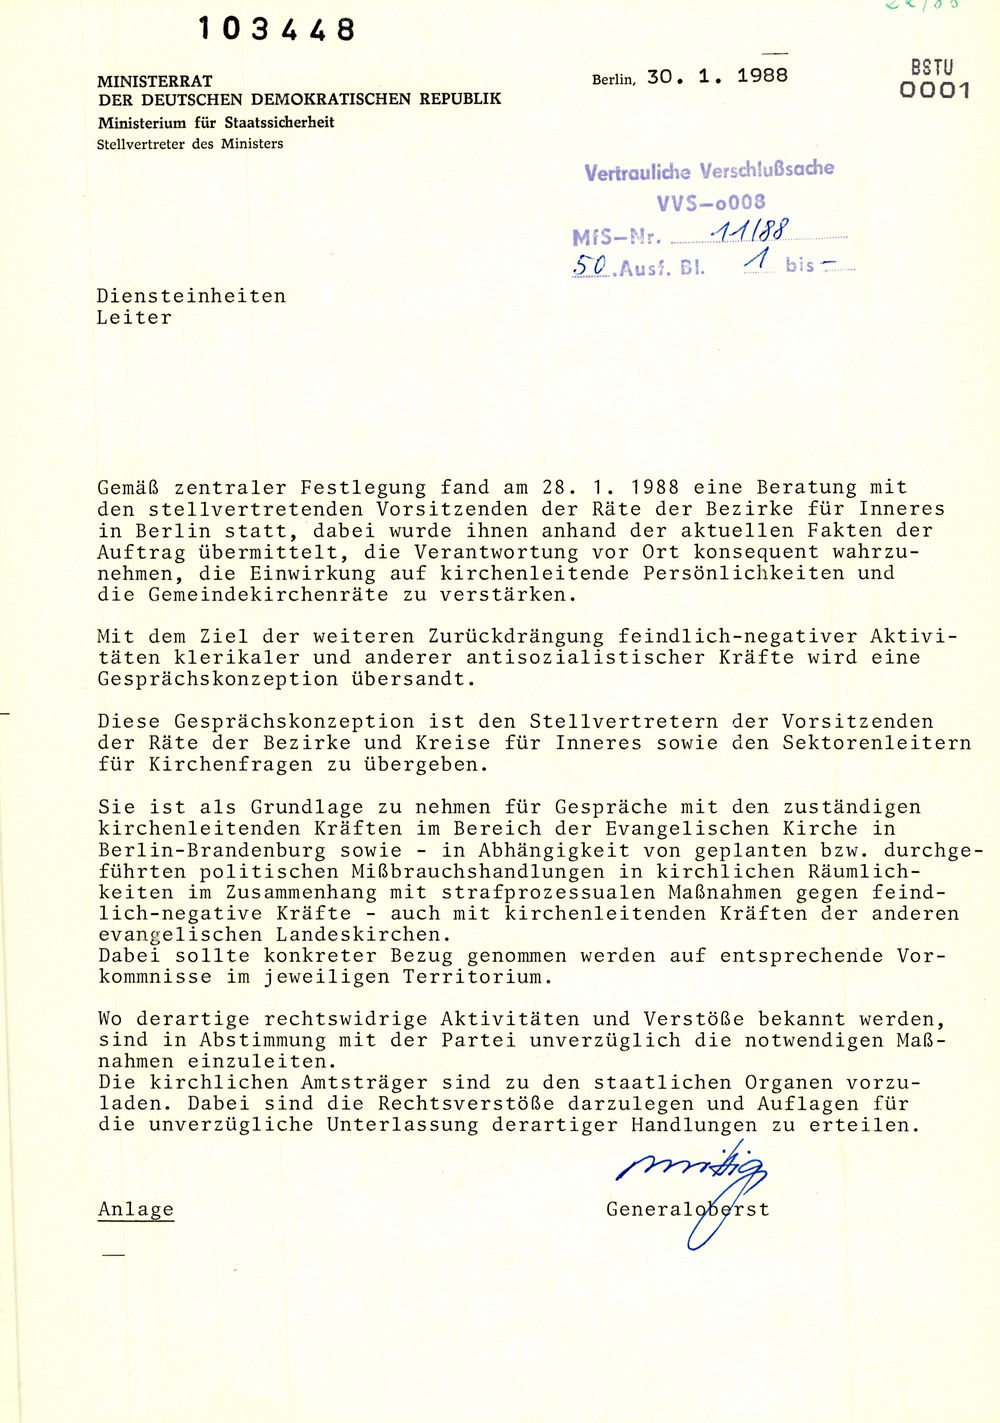 Schreiben An Alle Diensteinheiten Zur Einwirkung Auf Die Kirchenleitenden Organe Mediathek Des Stasi Unterlagen Archivs